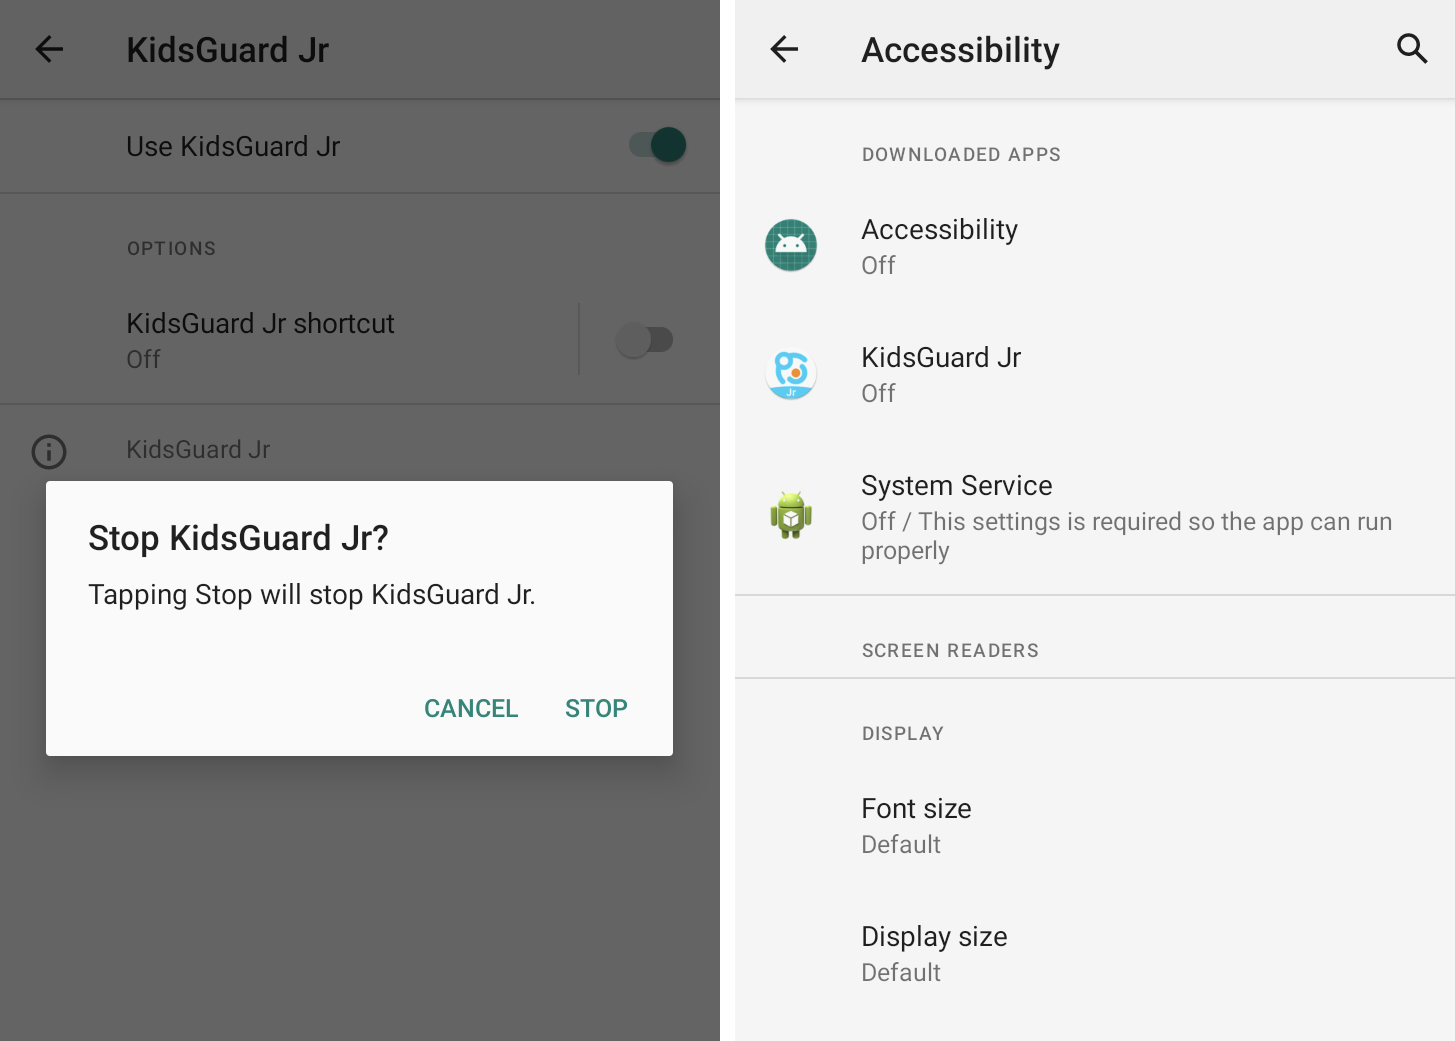 Duas capturas de tela lado a lado mostrando um aplicativo chamado KidsGuard sequestrando o recurso de acessibilidade do Android para espionar usuários desavisados.  A segunda captura de tela mostra três aplicativos de stalkerware – chamados Accessibility, KidsGuard e System Service – todos desligados para que não funcionem mais ativamente.